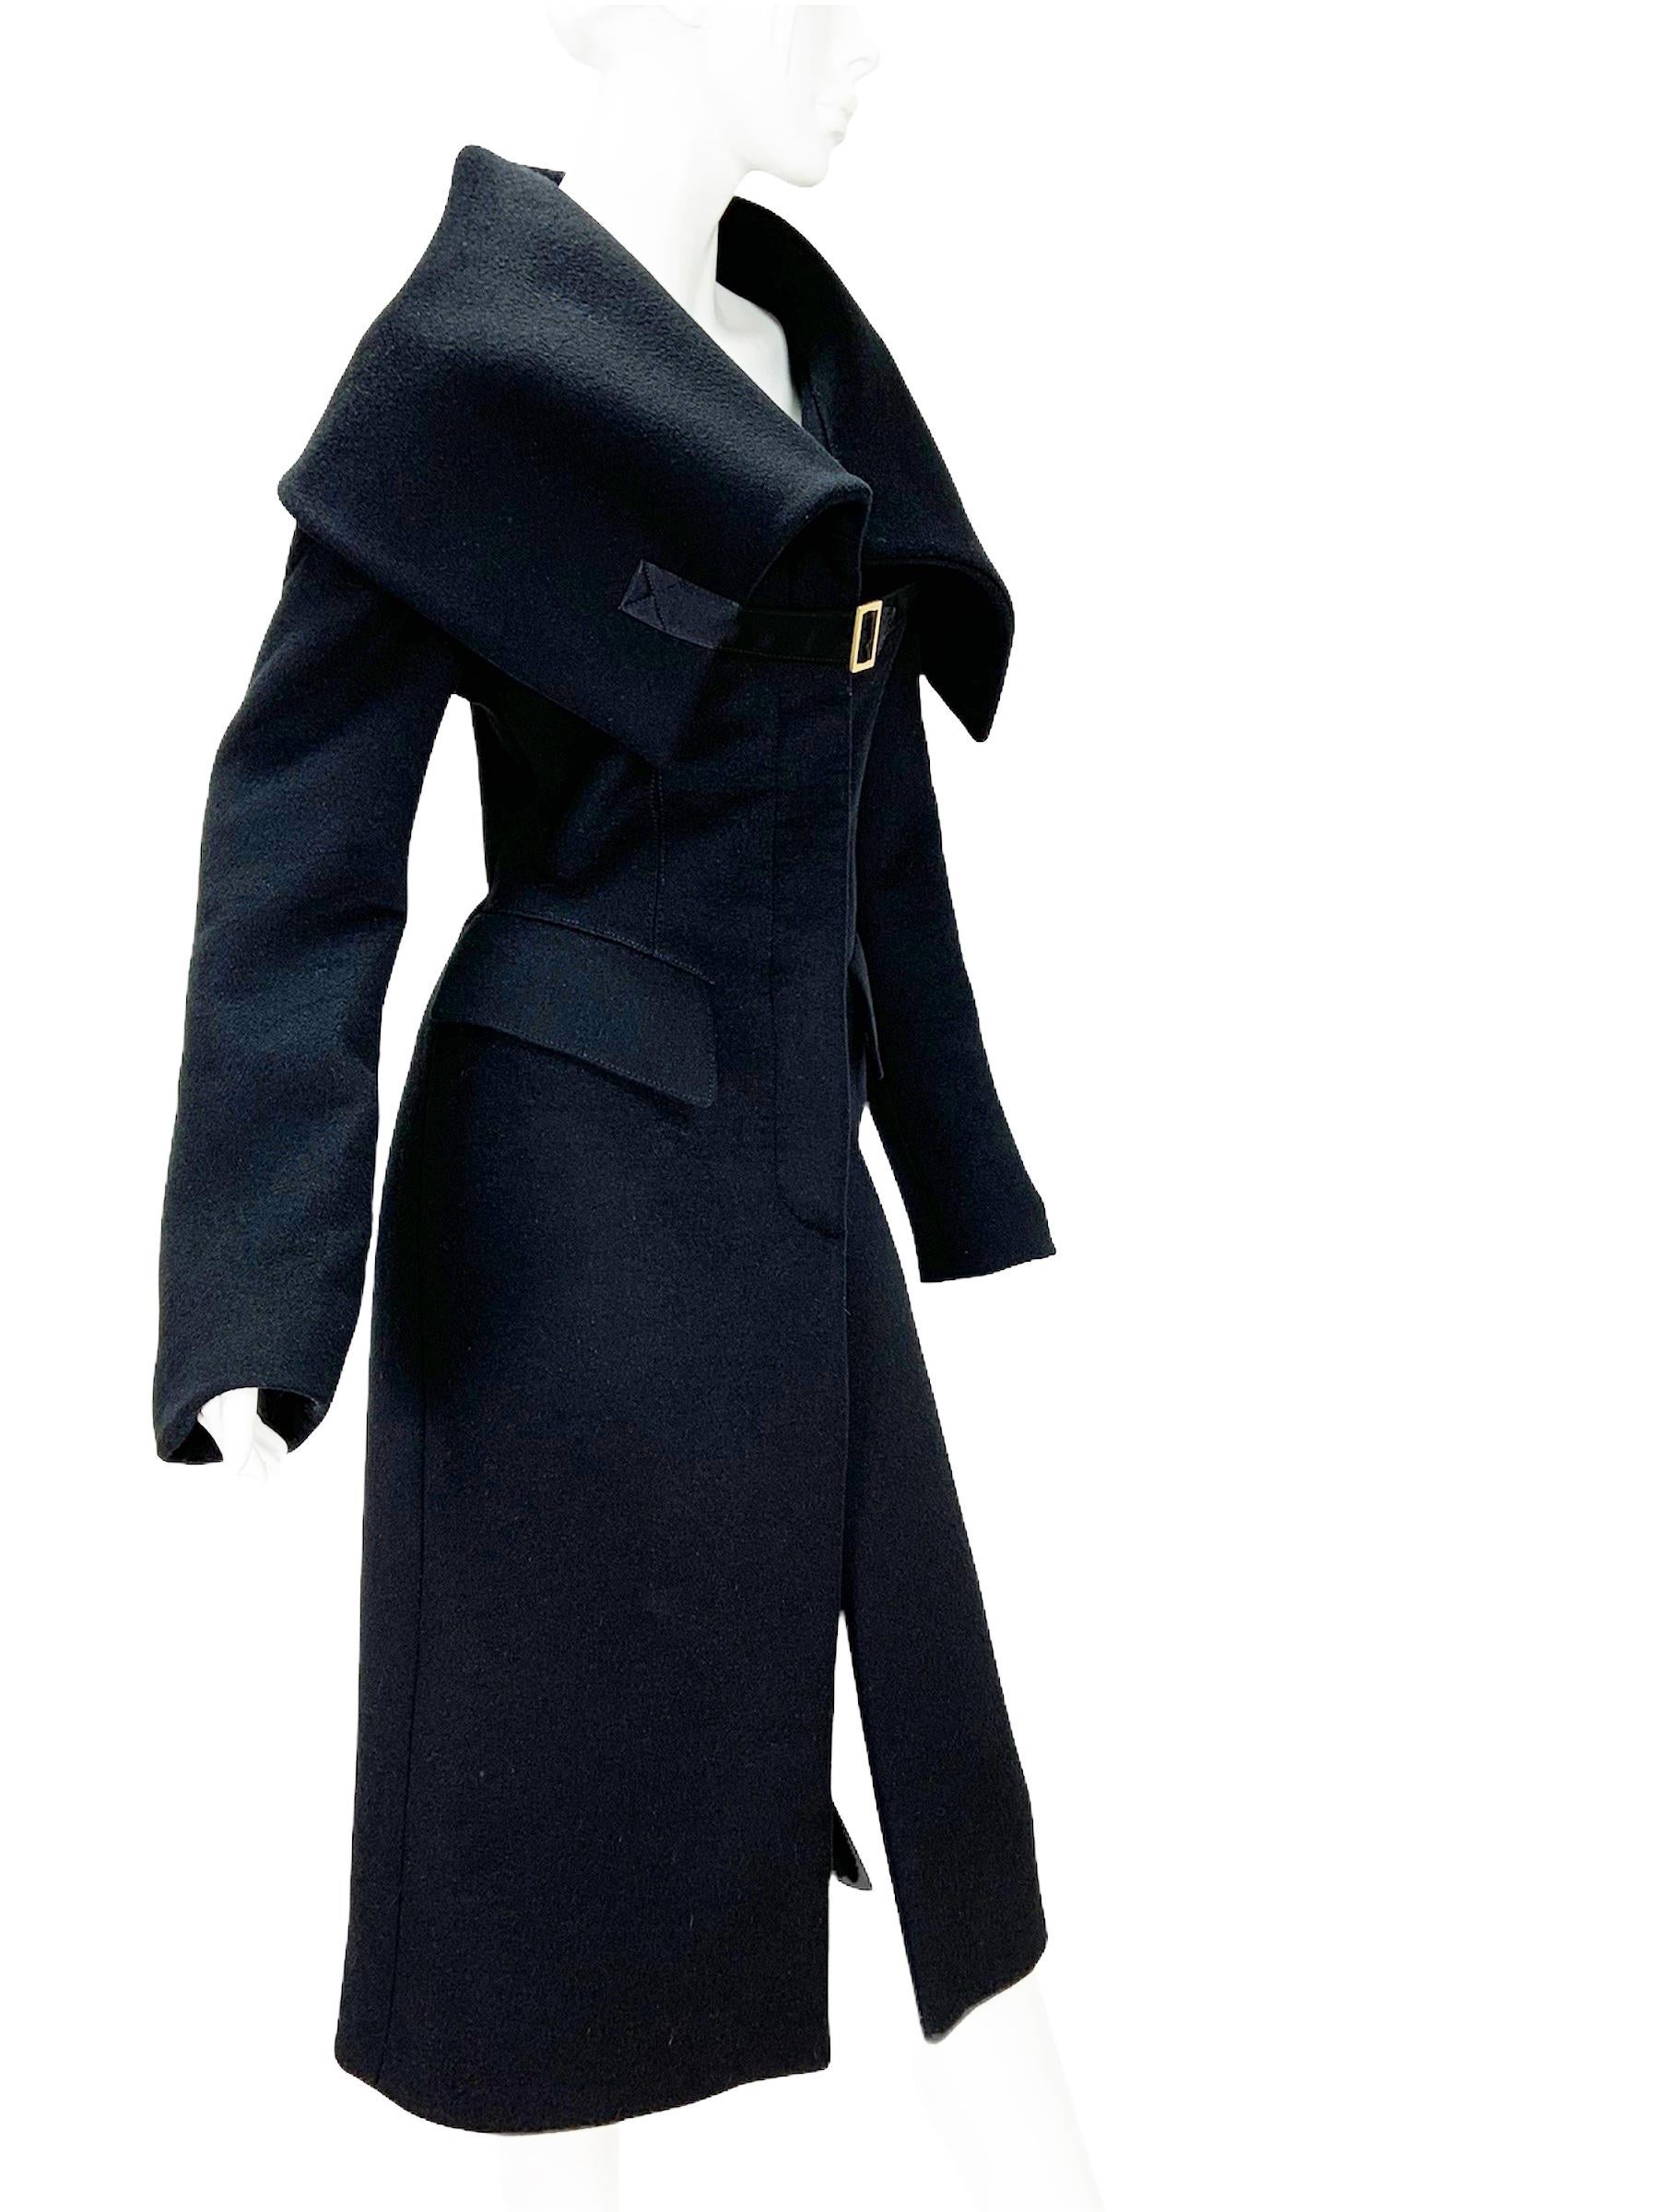 Tom Ford für Gucci Schwarzer Mantel aus Wolle
Designer-Größe 44 - fällt klein aus, bitte Maße überprüfen.
F/W 2003 Kollektion
100% Wolle, übergroßer Schalkragen, zwei Vordertaschen, versteckter Knopfverschluss, hoher Schlitz am Rücken, Futter mit